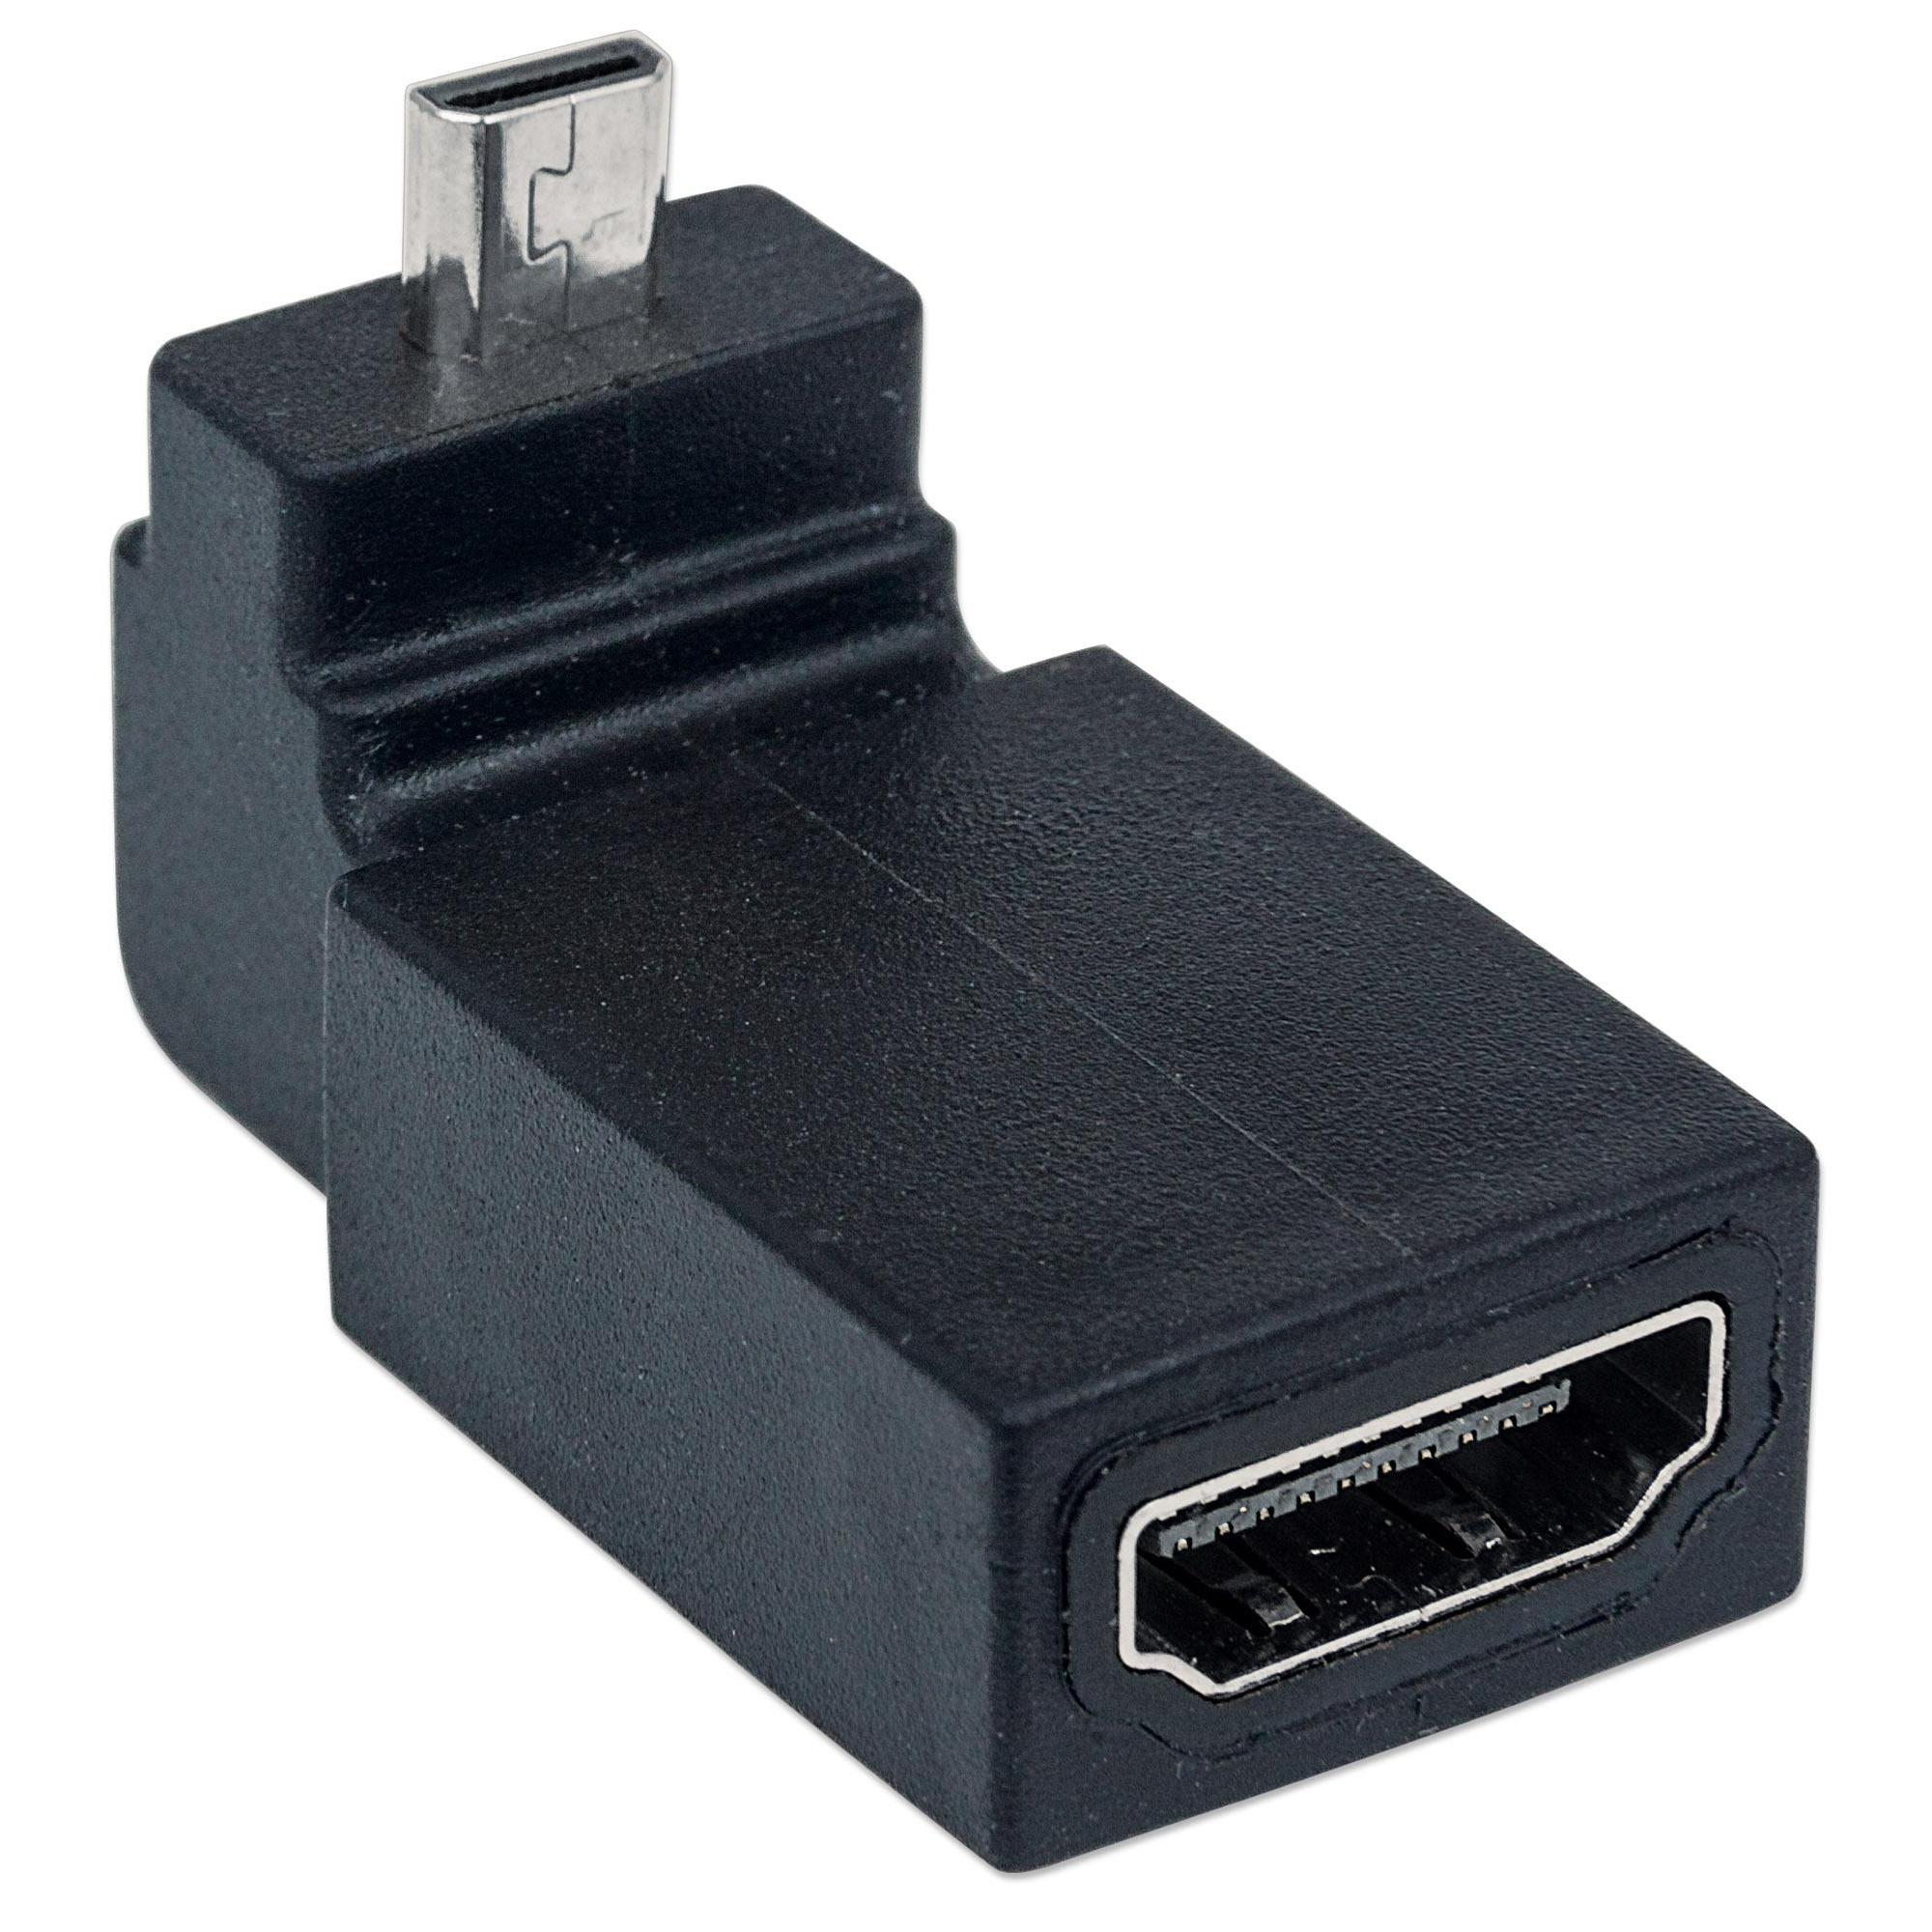 Adattatore HDMI A Femmina / Micro D Maschio Angolato Nero